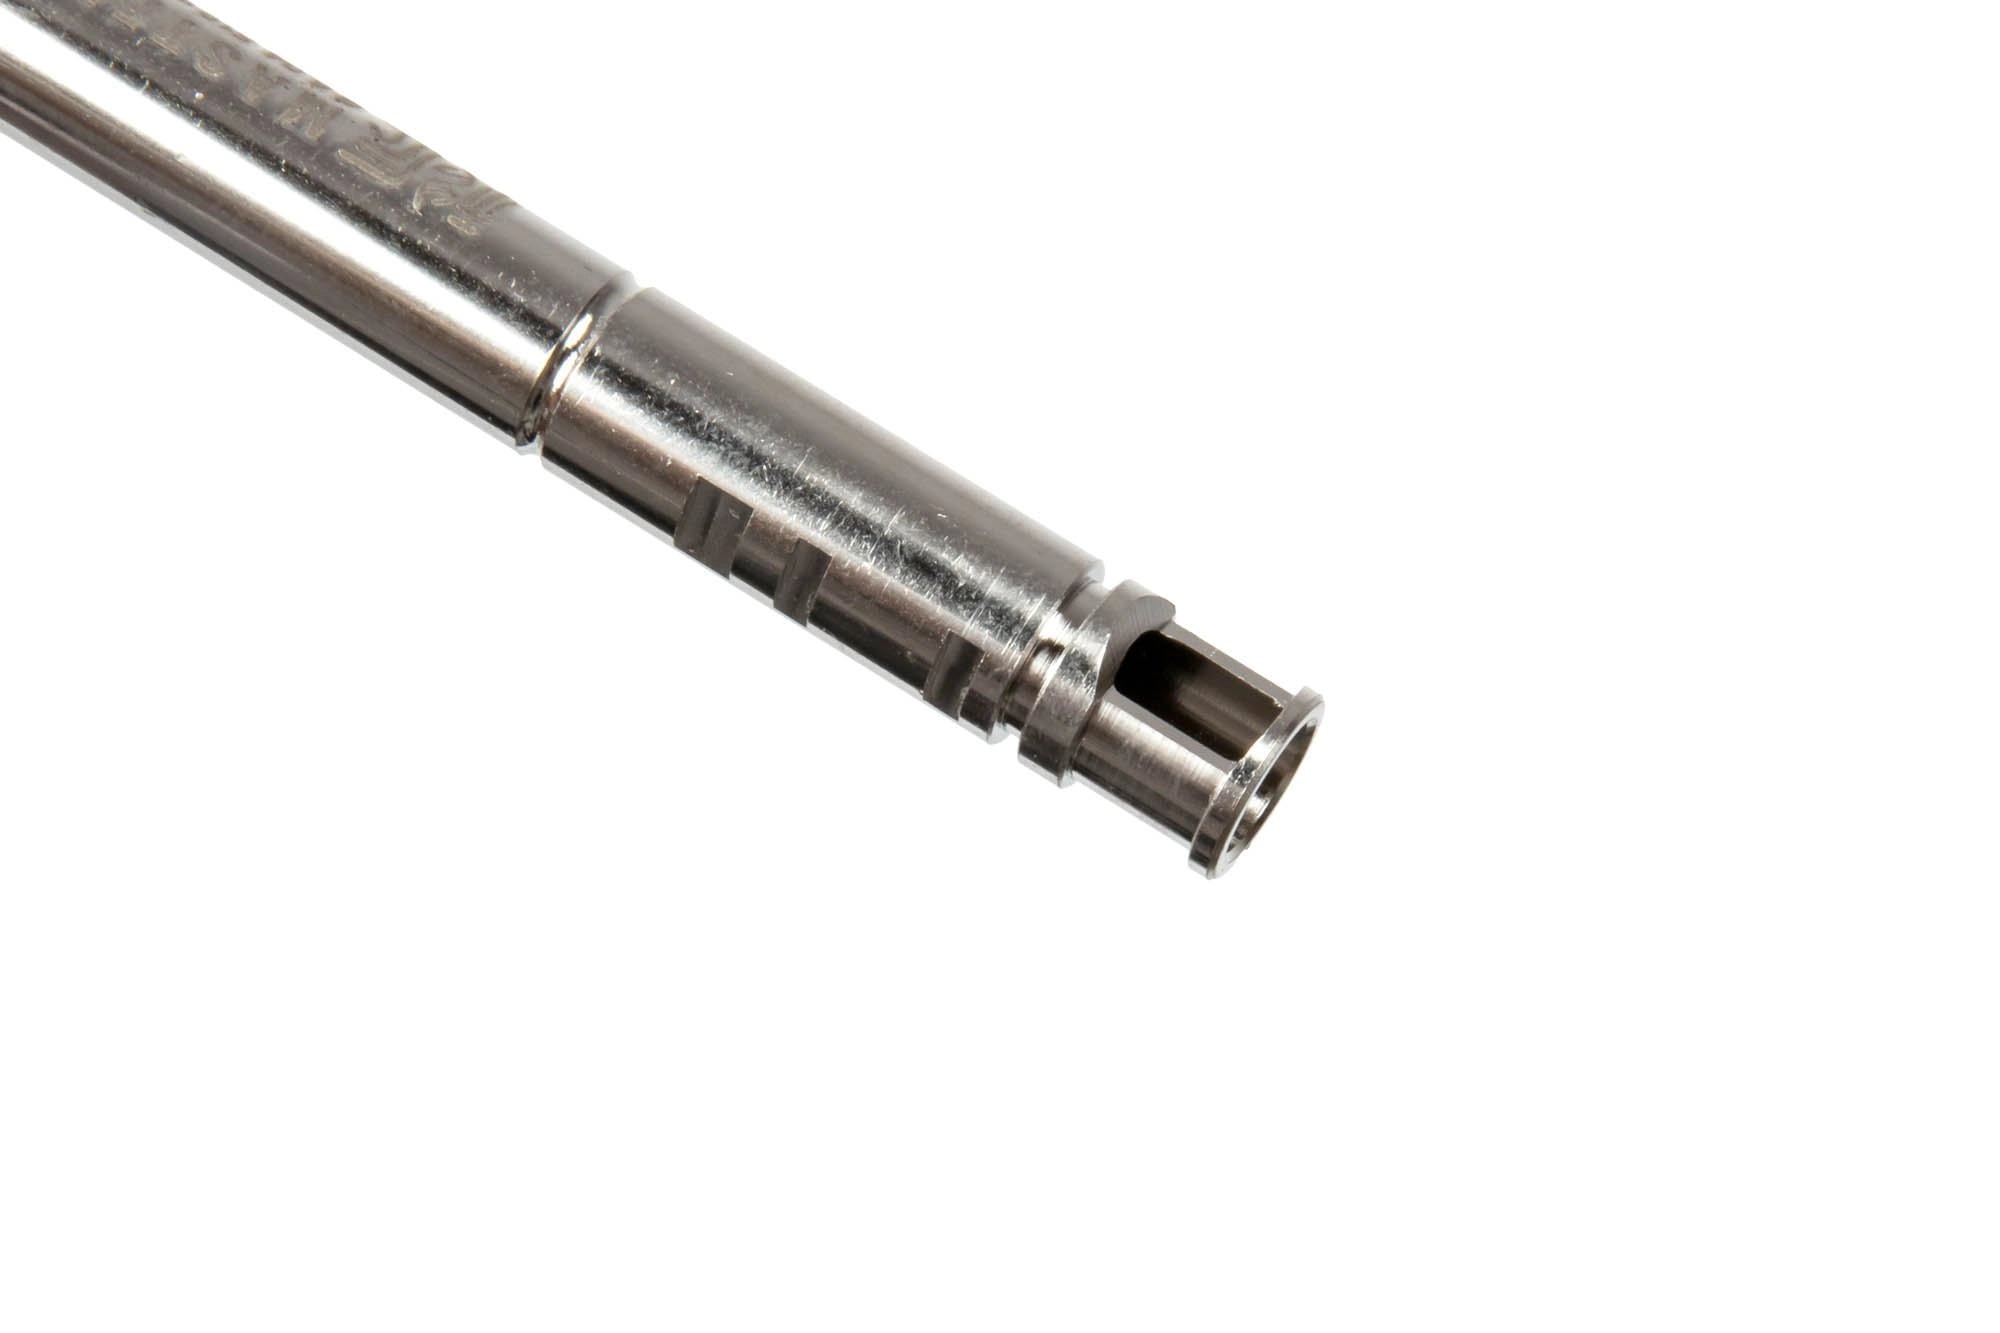 R-Hop 6.04 Precision Barrel for AEG / GBB replicas - 370mm